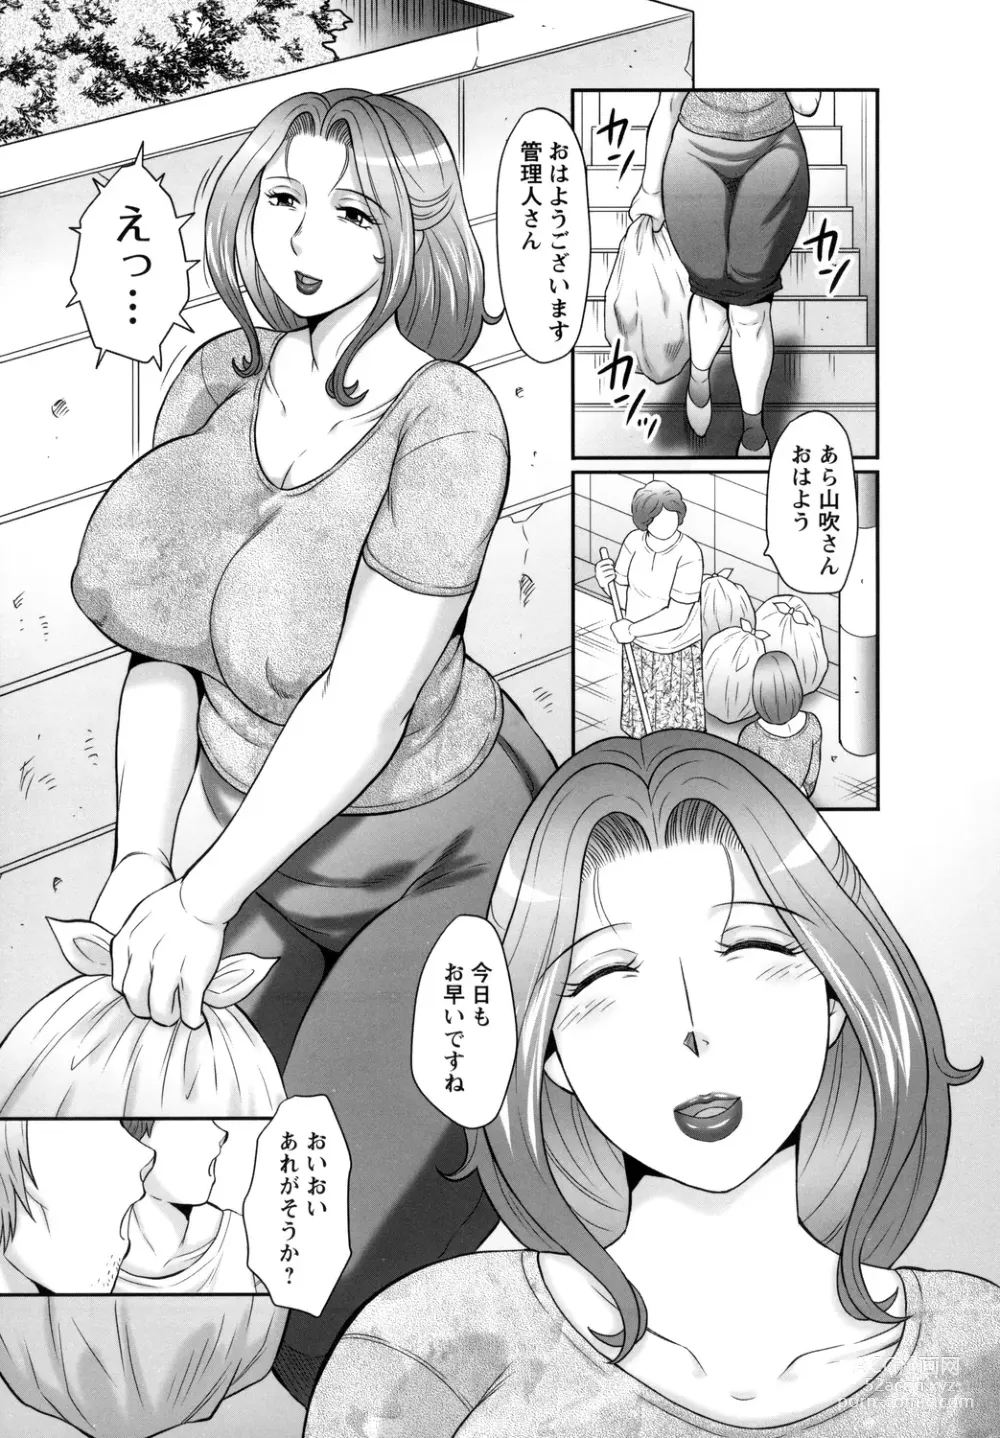 Page 9 of manga Midaragami Seinaru Jukujo ga Mesubuta Ika no Nanika ni Ochiru made